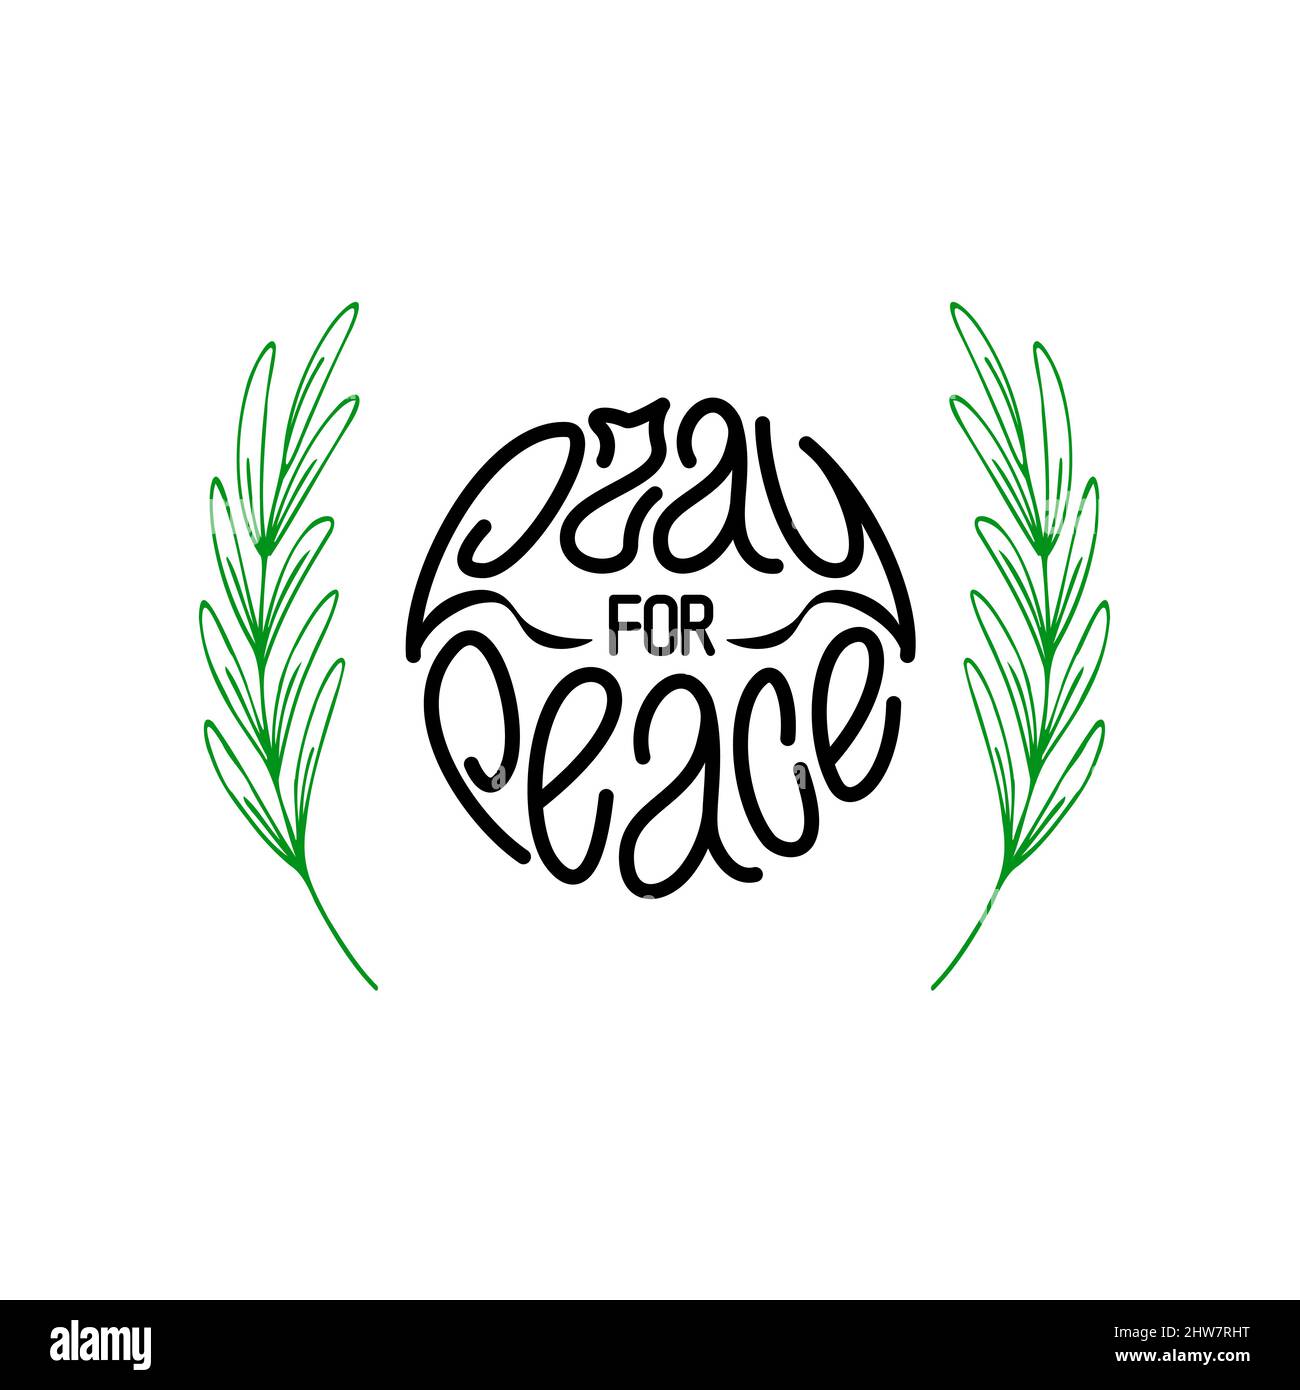 Betet für den Frieden. Schwarzer handgezeichneter Schriftzug mit grünen Olivenzweigen Stock Vektor